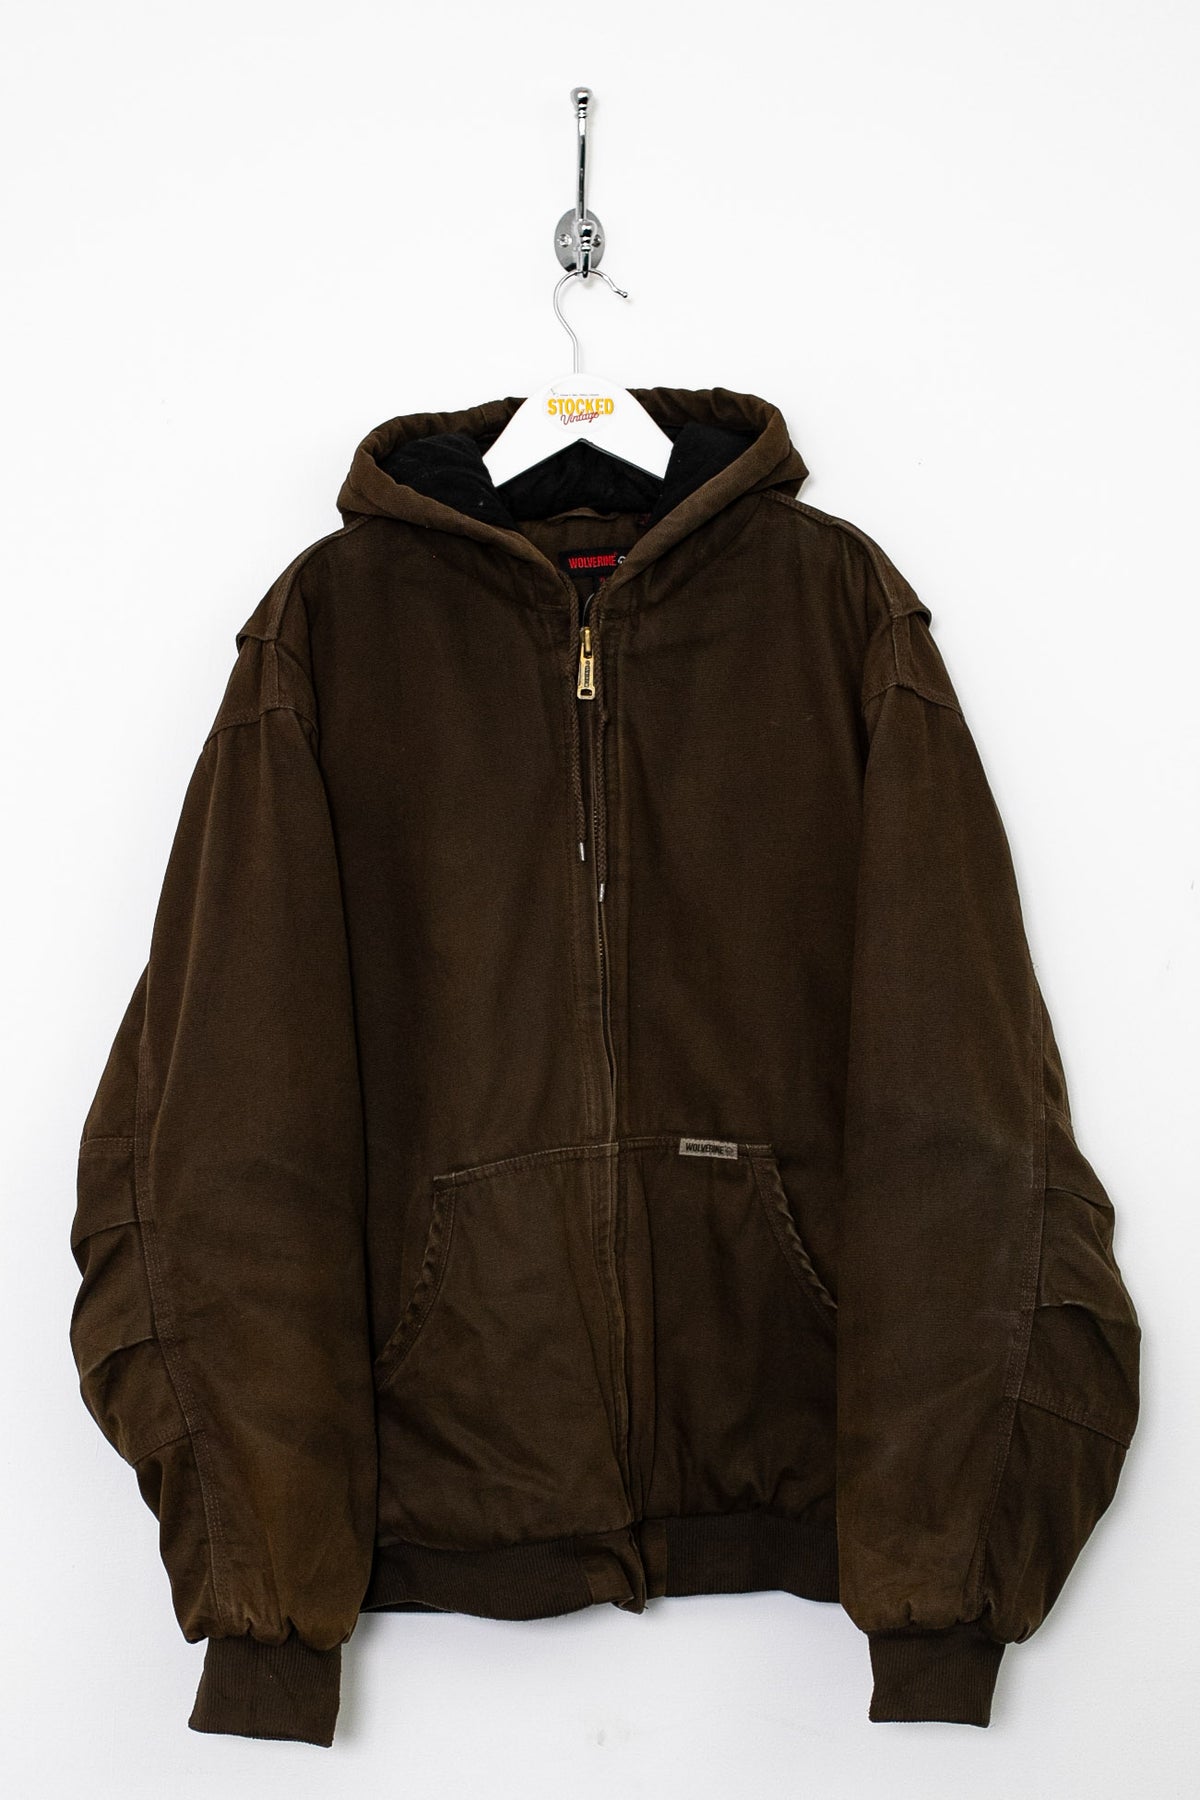 00s Wolverine Workwear Jacket (XL)